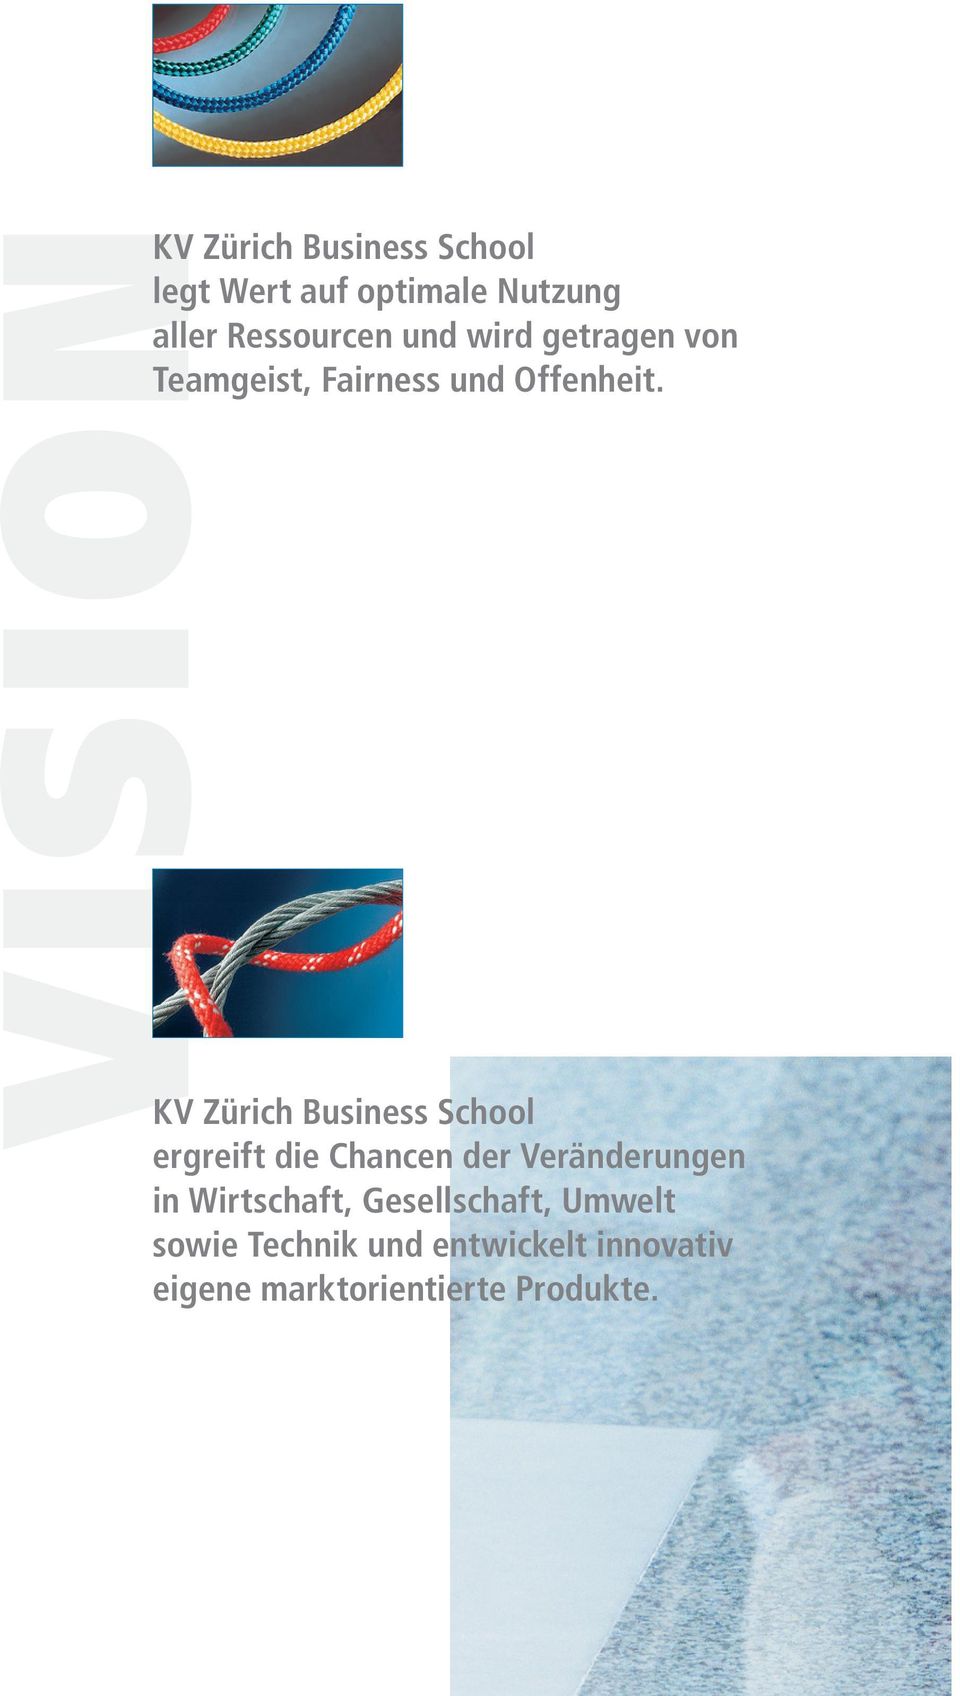 KV Zürich Business School ergreift die Chancen der Veränderungen in